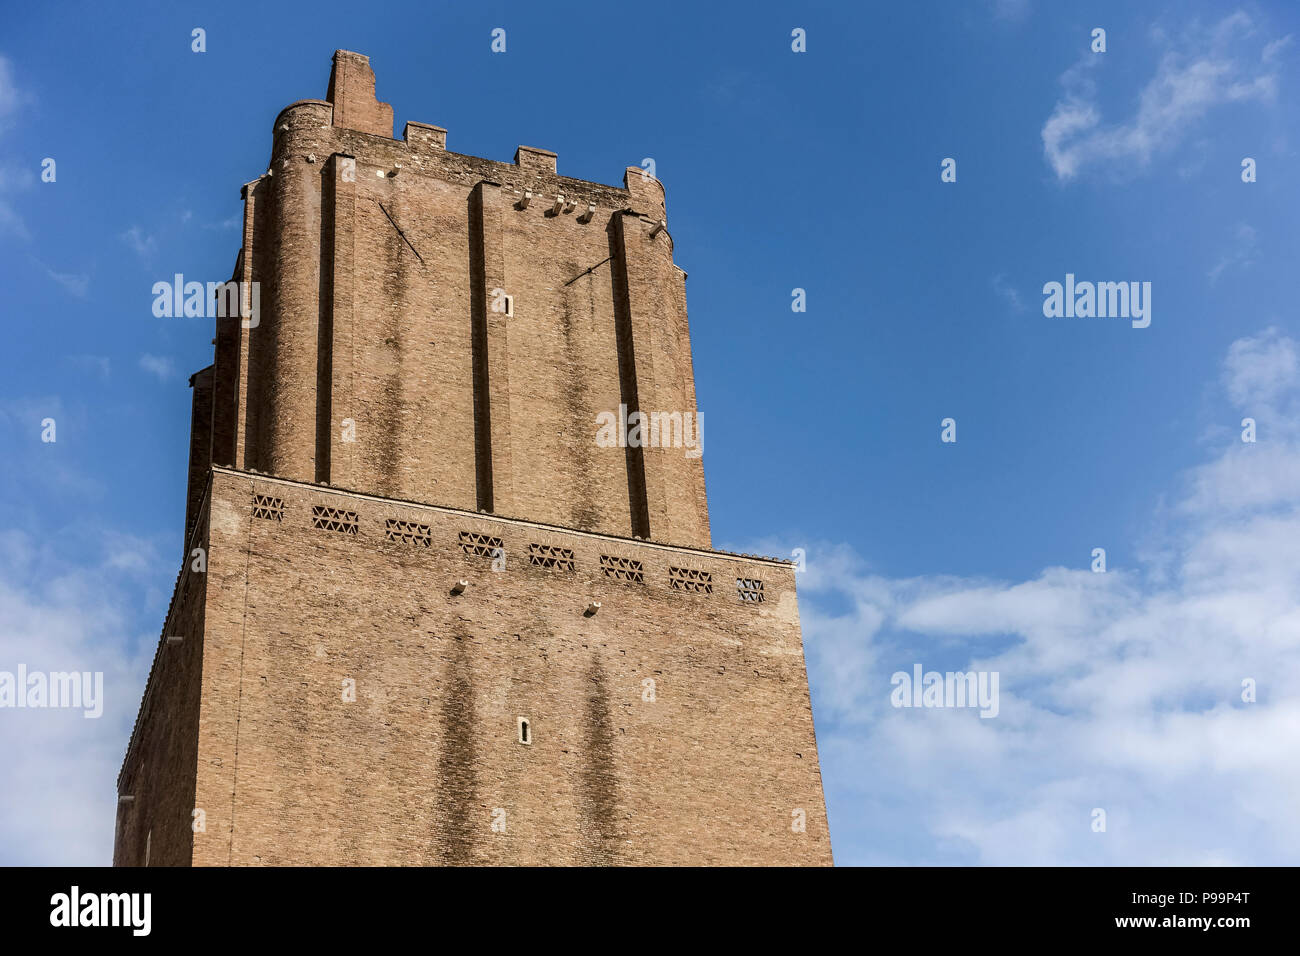 Turm der Miliz "Torre delle Milizie" ist ein befestigter Turm und ein mittelalterliches Denkmal. Rom, Italien, Europa, Europäische Union, EU. Blauer Himmel, Kopierbereich Stockfoto